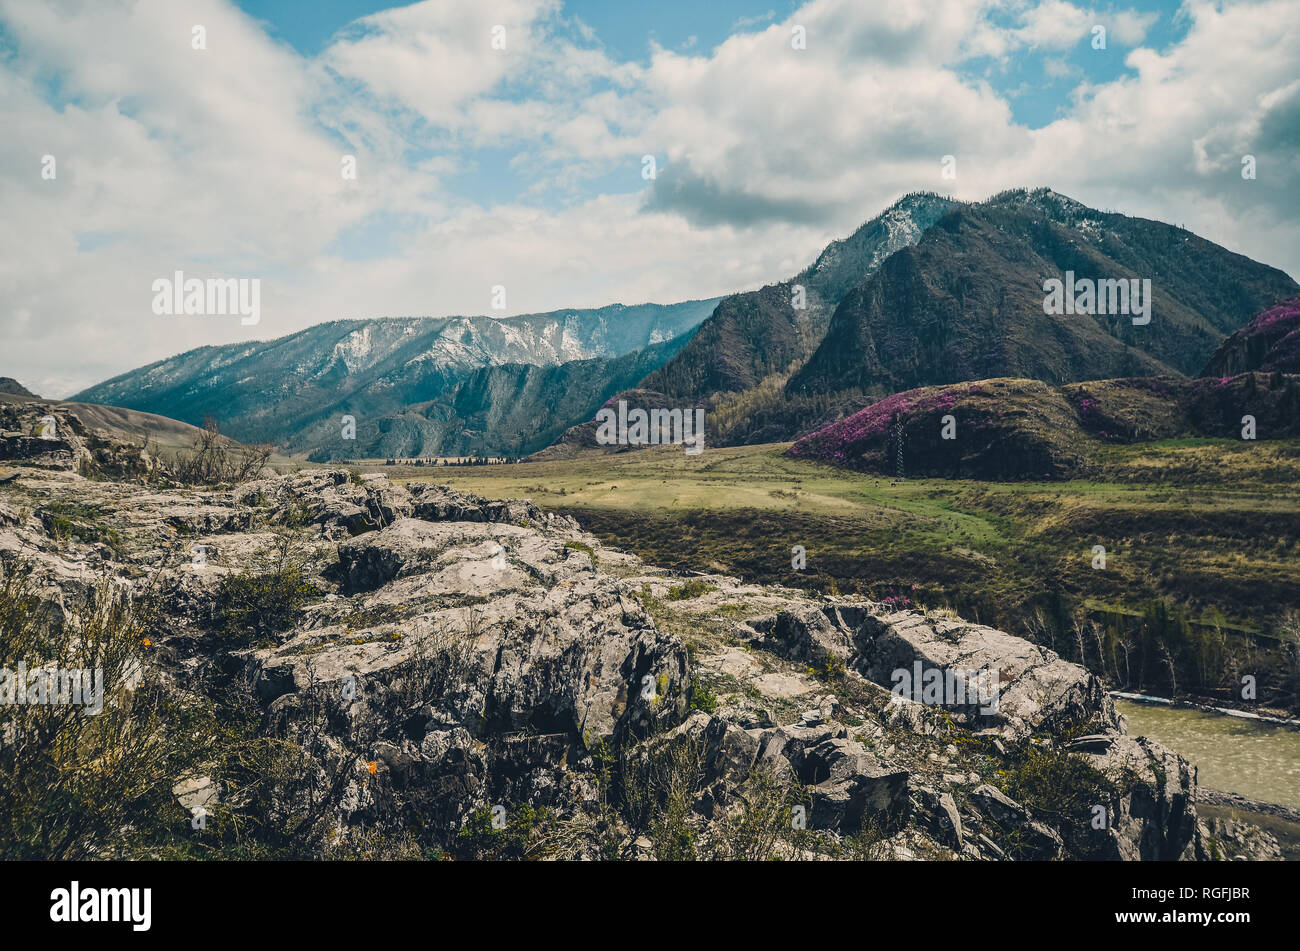 Paysages de montagne Chui intestinal, Altaï. Floraison printanière dans les montagnes Banque D'Images